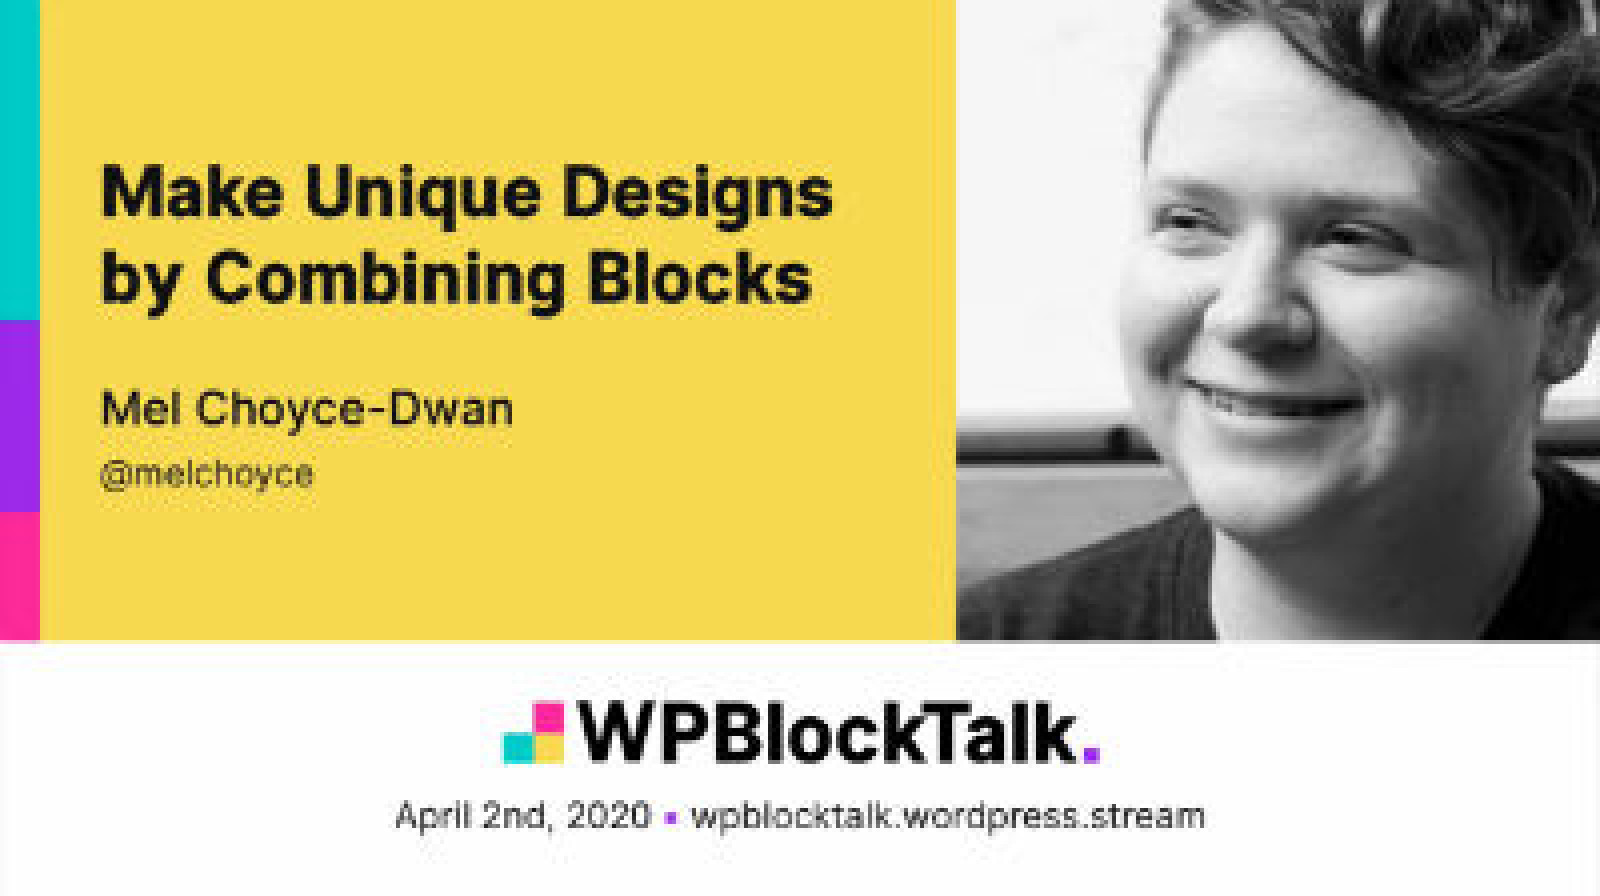 Make Unique Designs by Combining Blocks